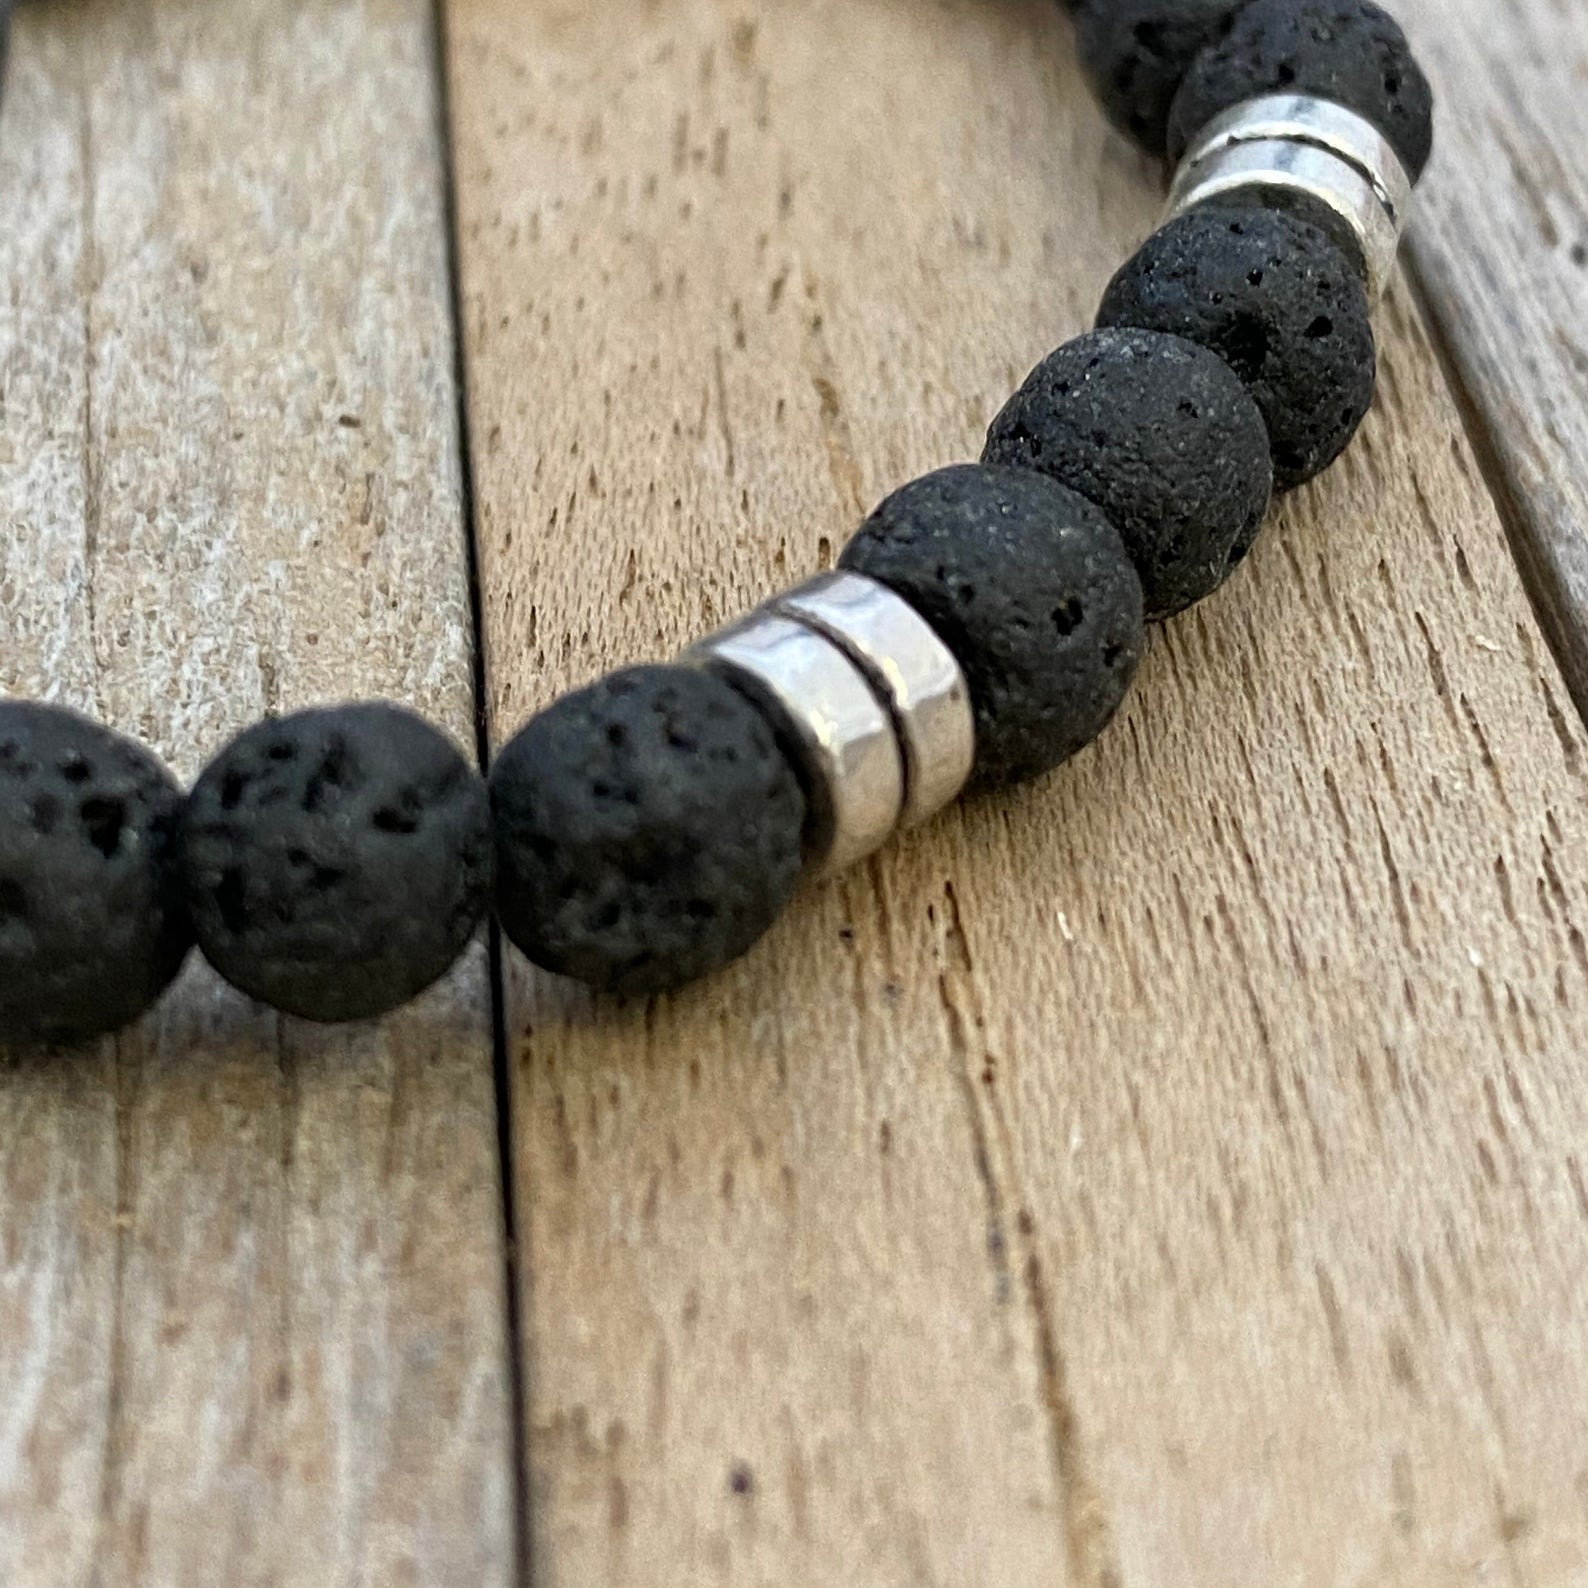 Lava Stones & Custom Vermeil Beads- Men's Beaded Bracelet - Gift for Dad - Gift for Him - Gift for Husbend - Gift for Anniversary